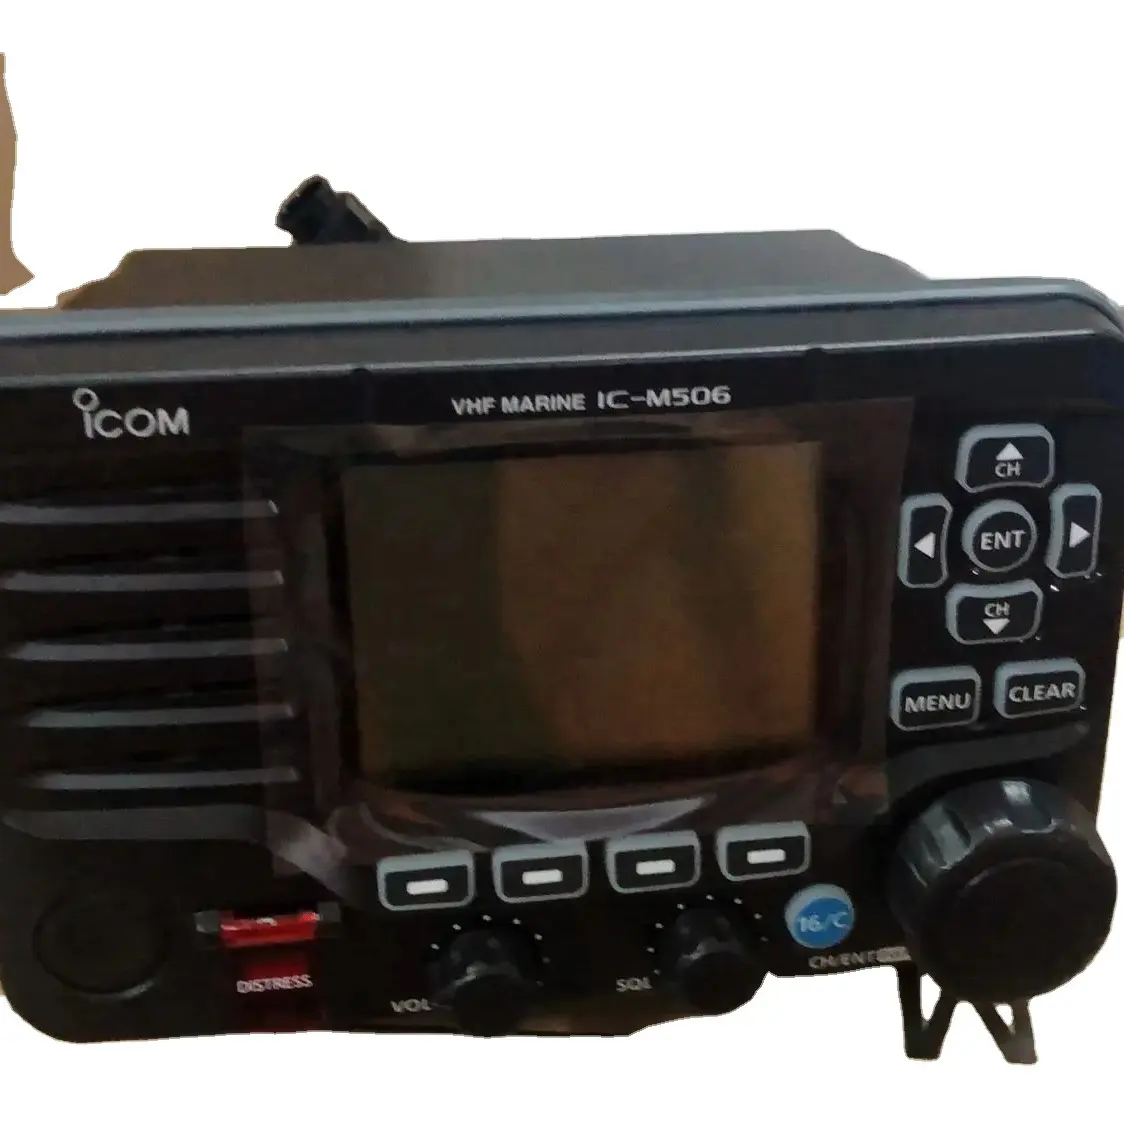 M506 VHF ricetrasmettitore marino icomfisso montaggio VHF e GPS/AIS ricevitore Combo con connettività NMEA 2000